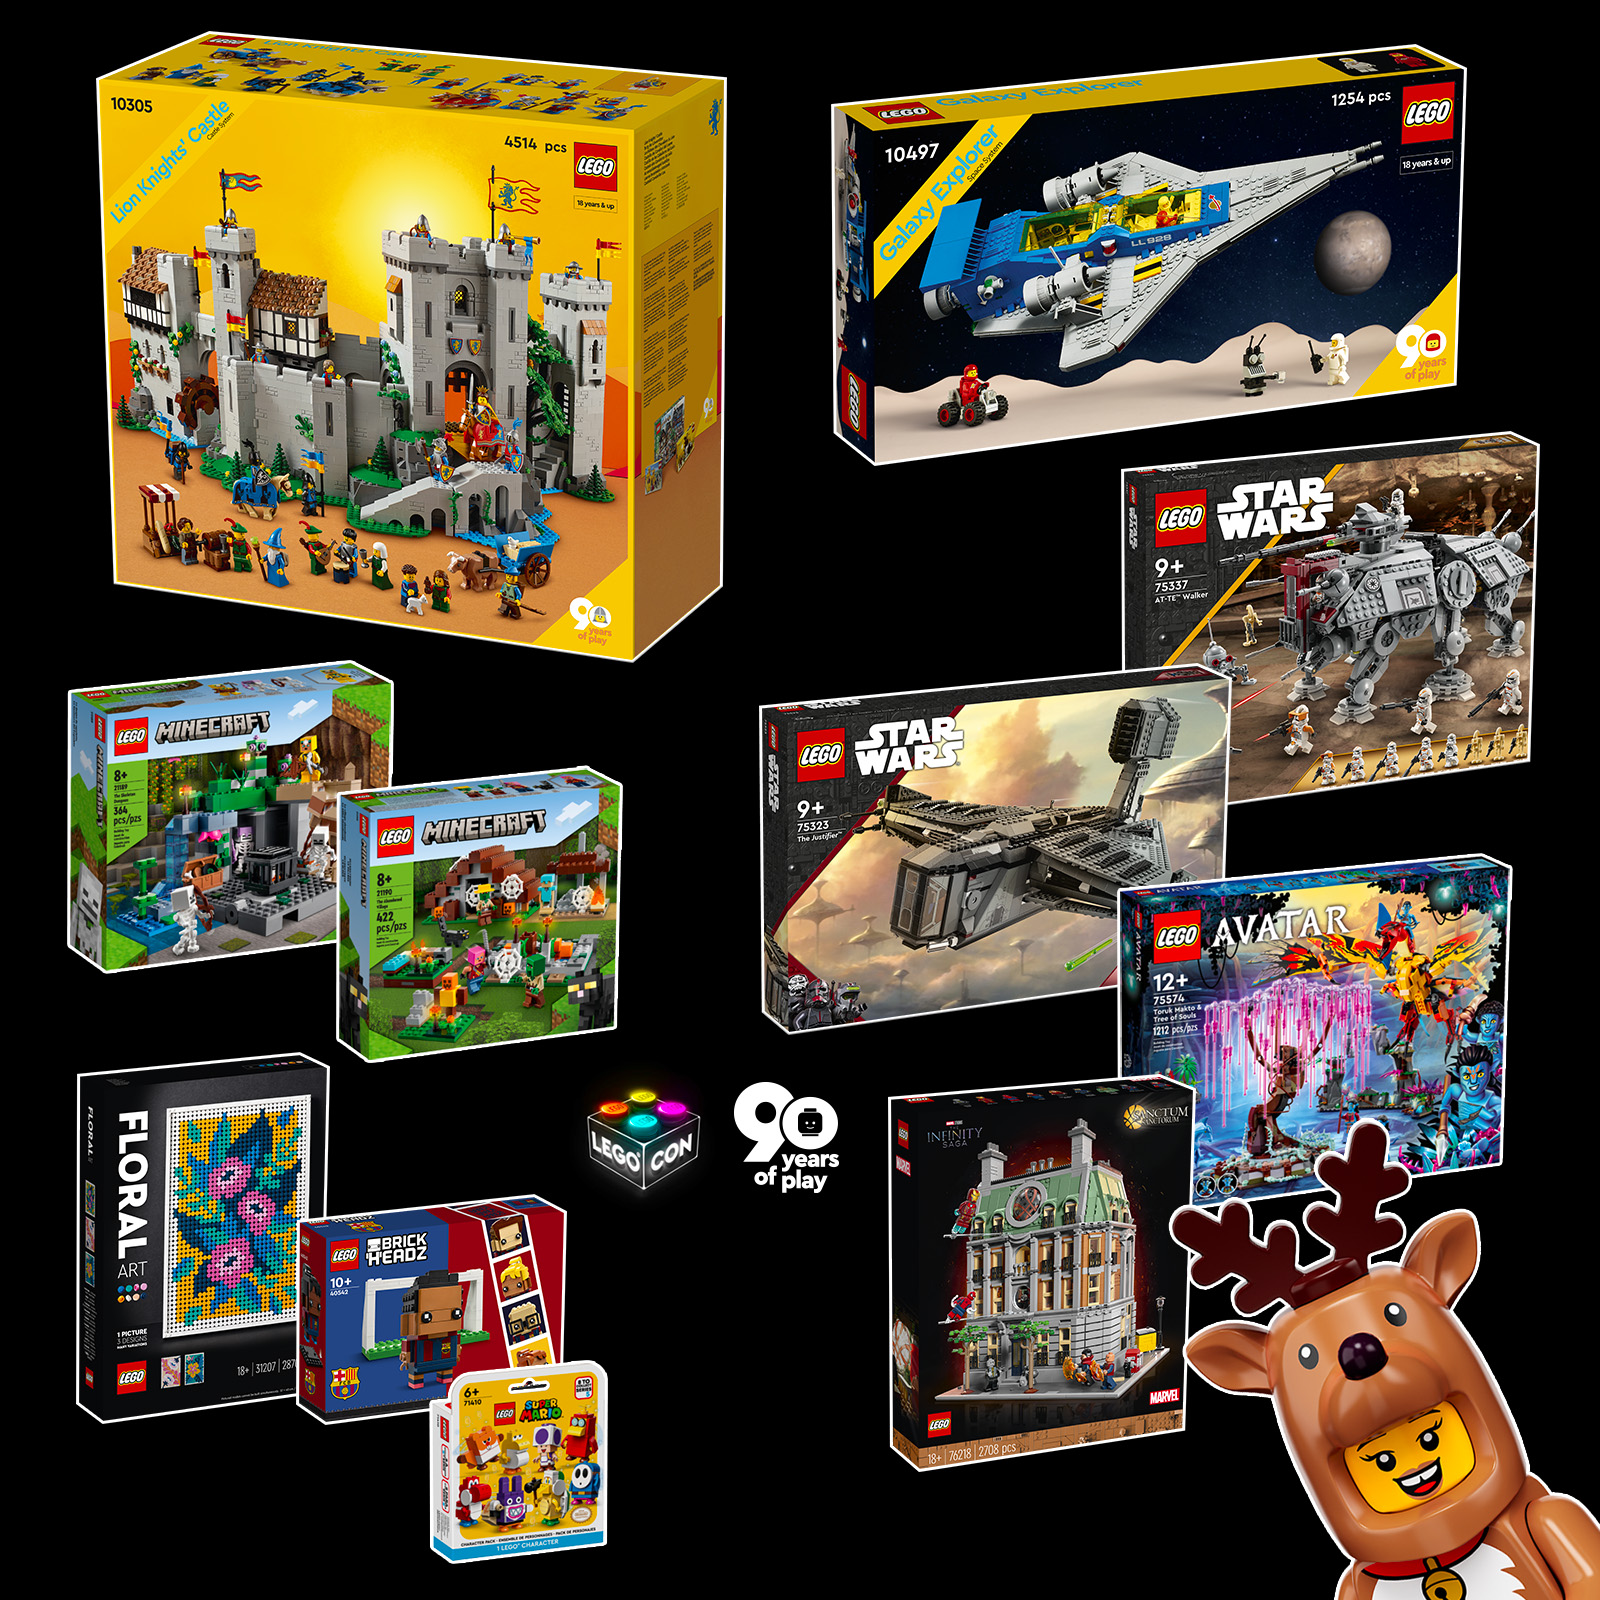 LEGO CON 2022: yhteenveto vuosikongressin aikana paljastetuista uutuuksista